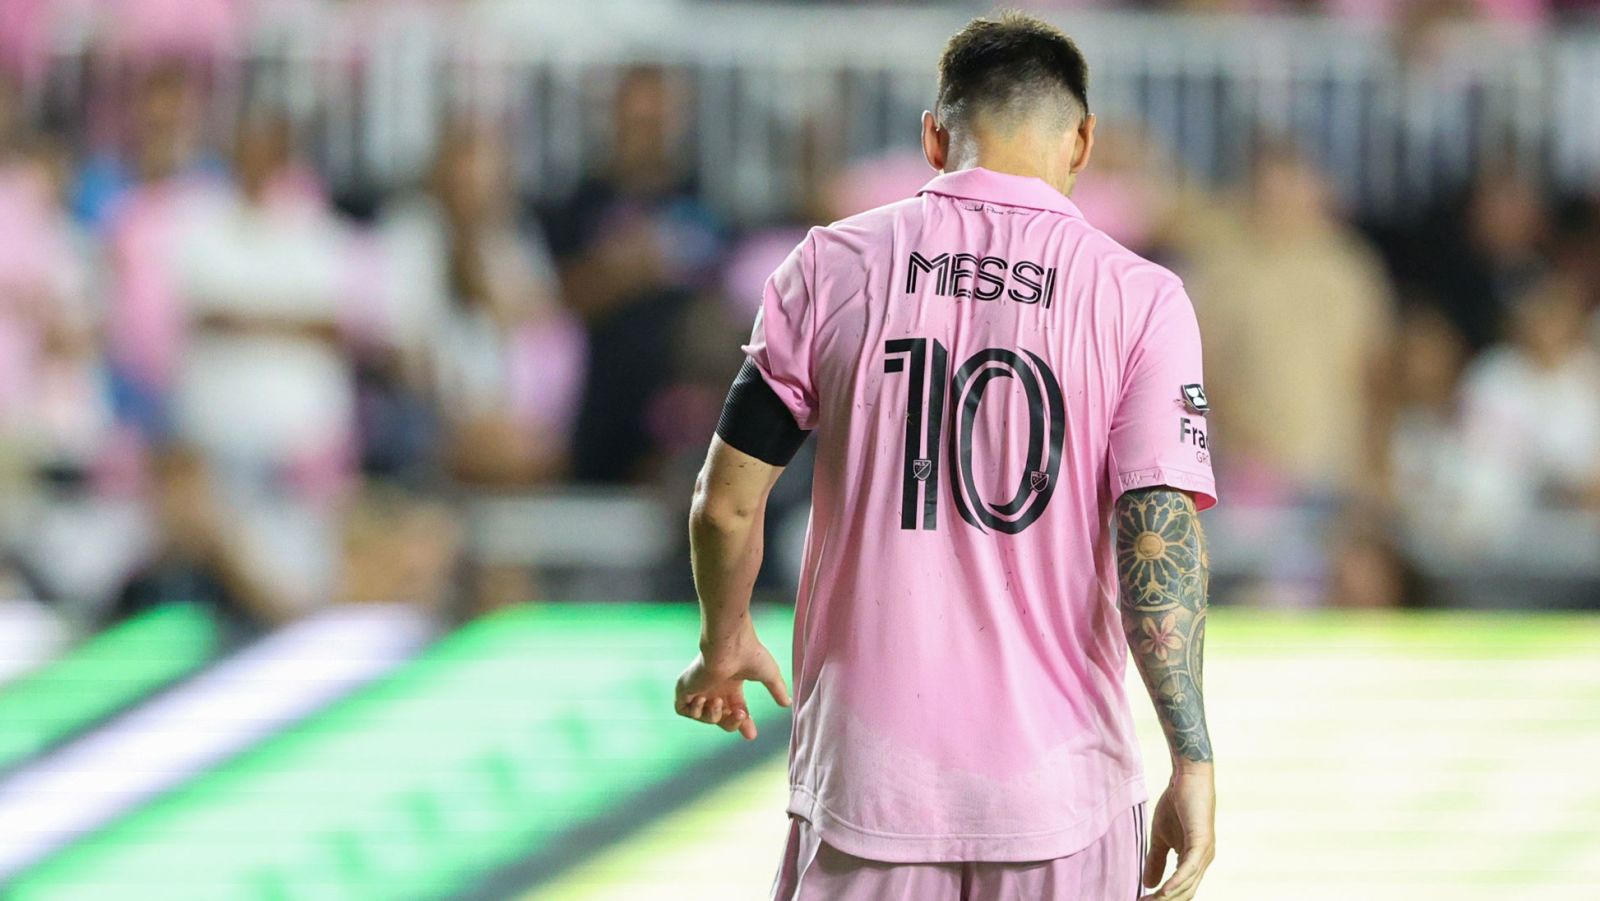 La camiseta del Inter Miami: Cuánto sale y cómo comprar la indumentaria de  Messi